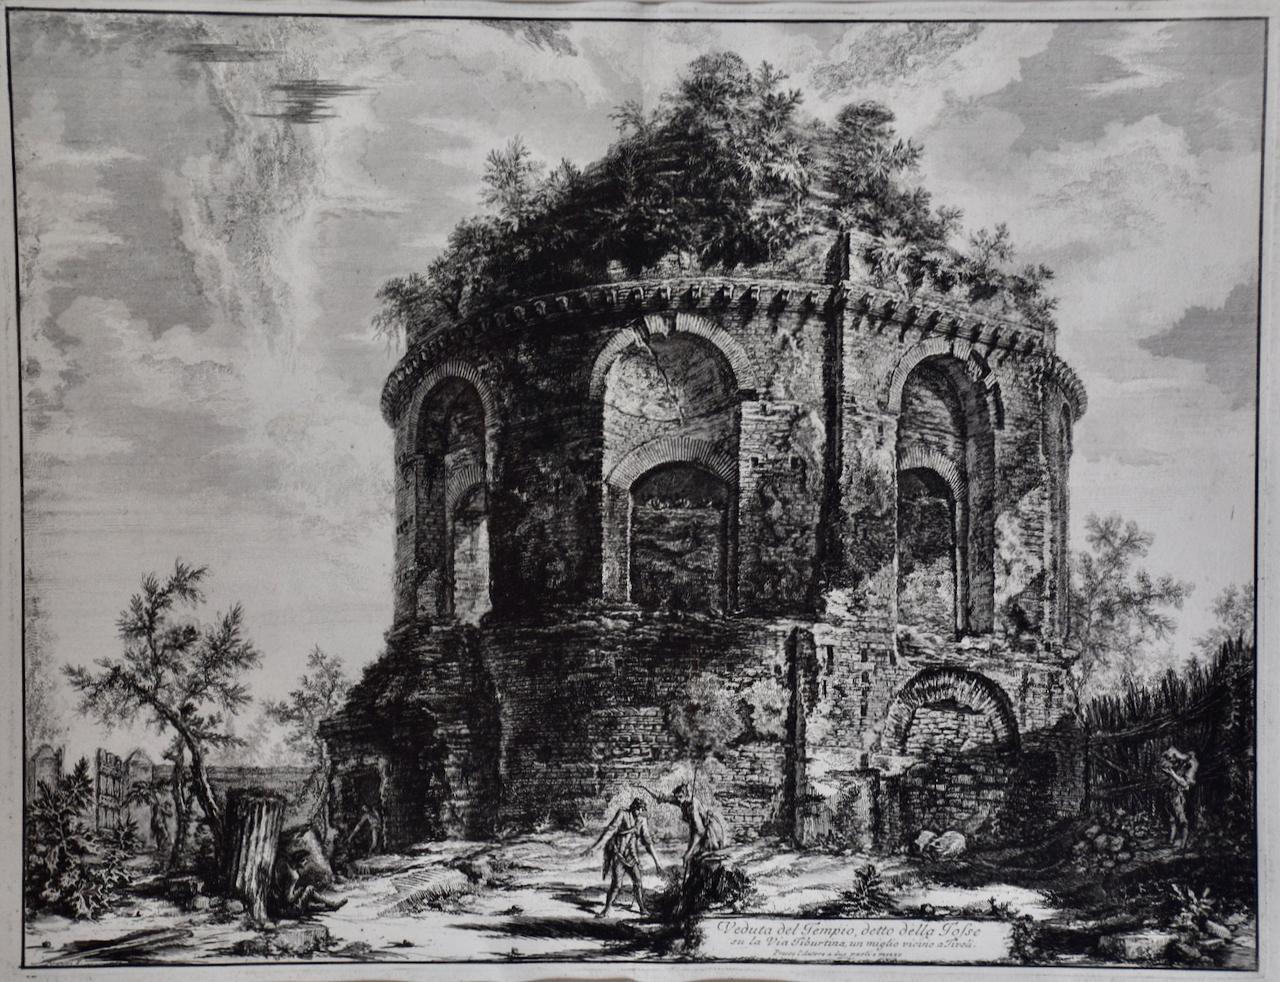 Architecture de temple romain antique : une gravure encadrée du 18e siècle réalisée par Piranesi - Print de Giovanni Battista Piranesi